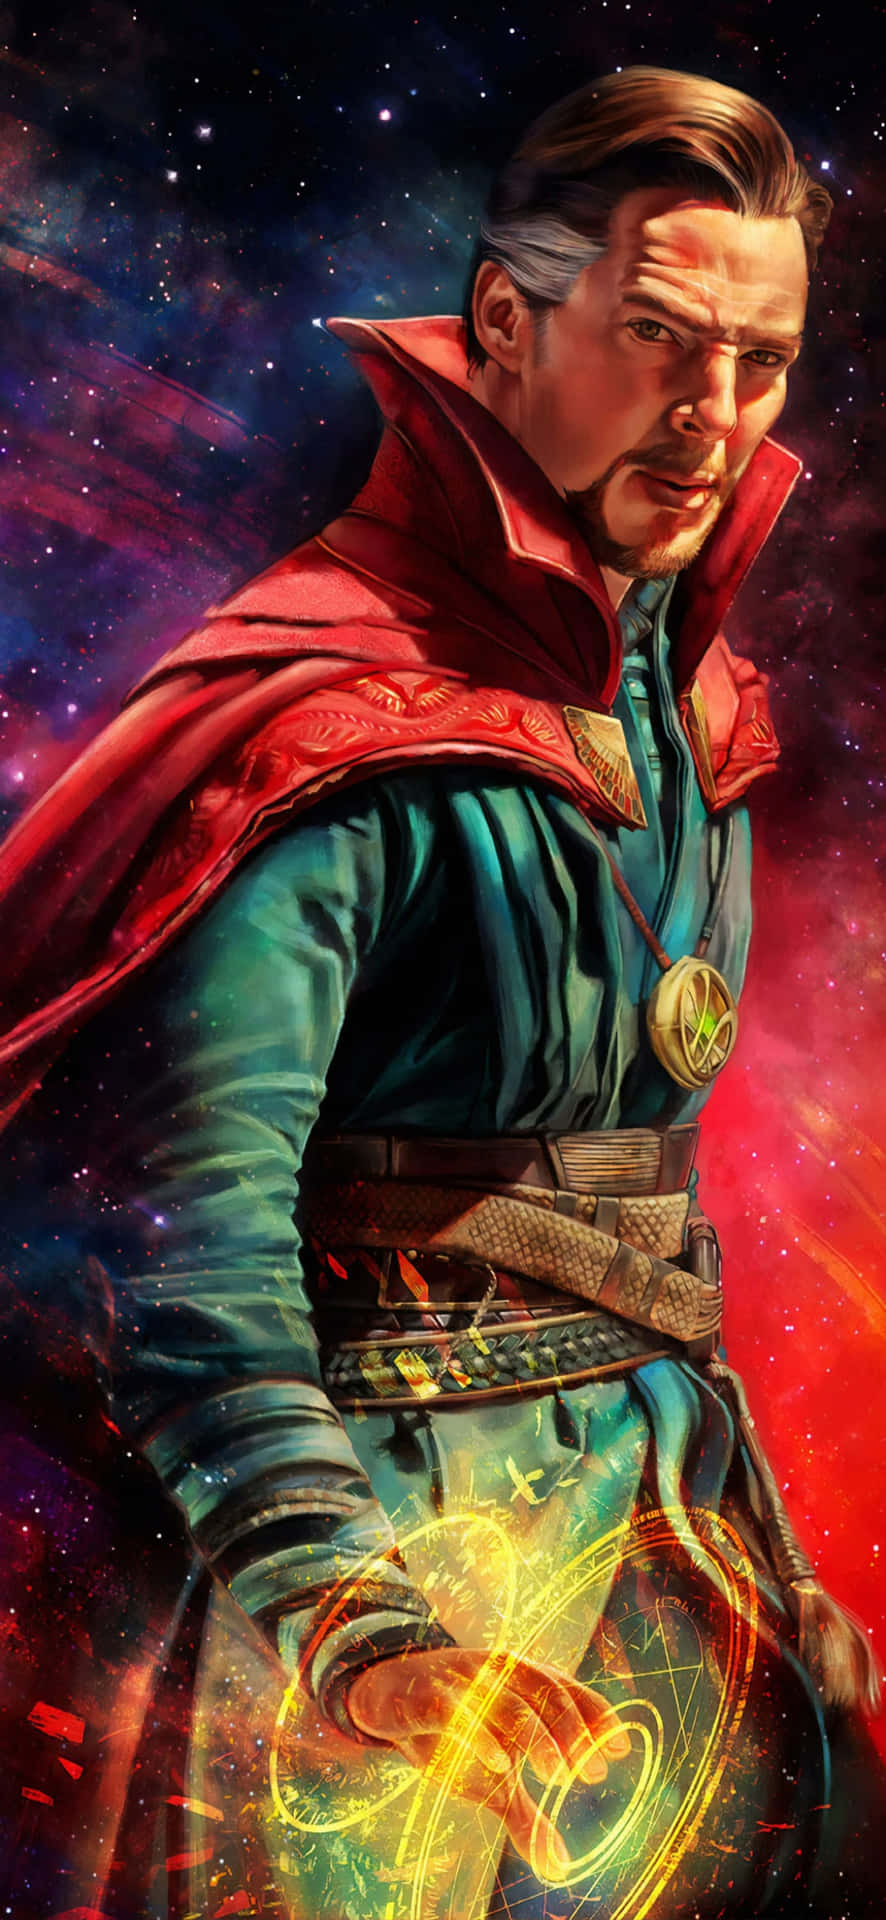 The Sorcerer Supreme Doctor Stephen Strange on an iPhone Wallpaper